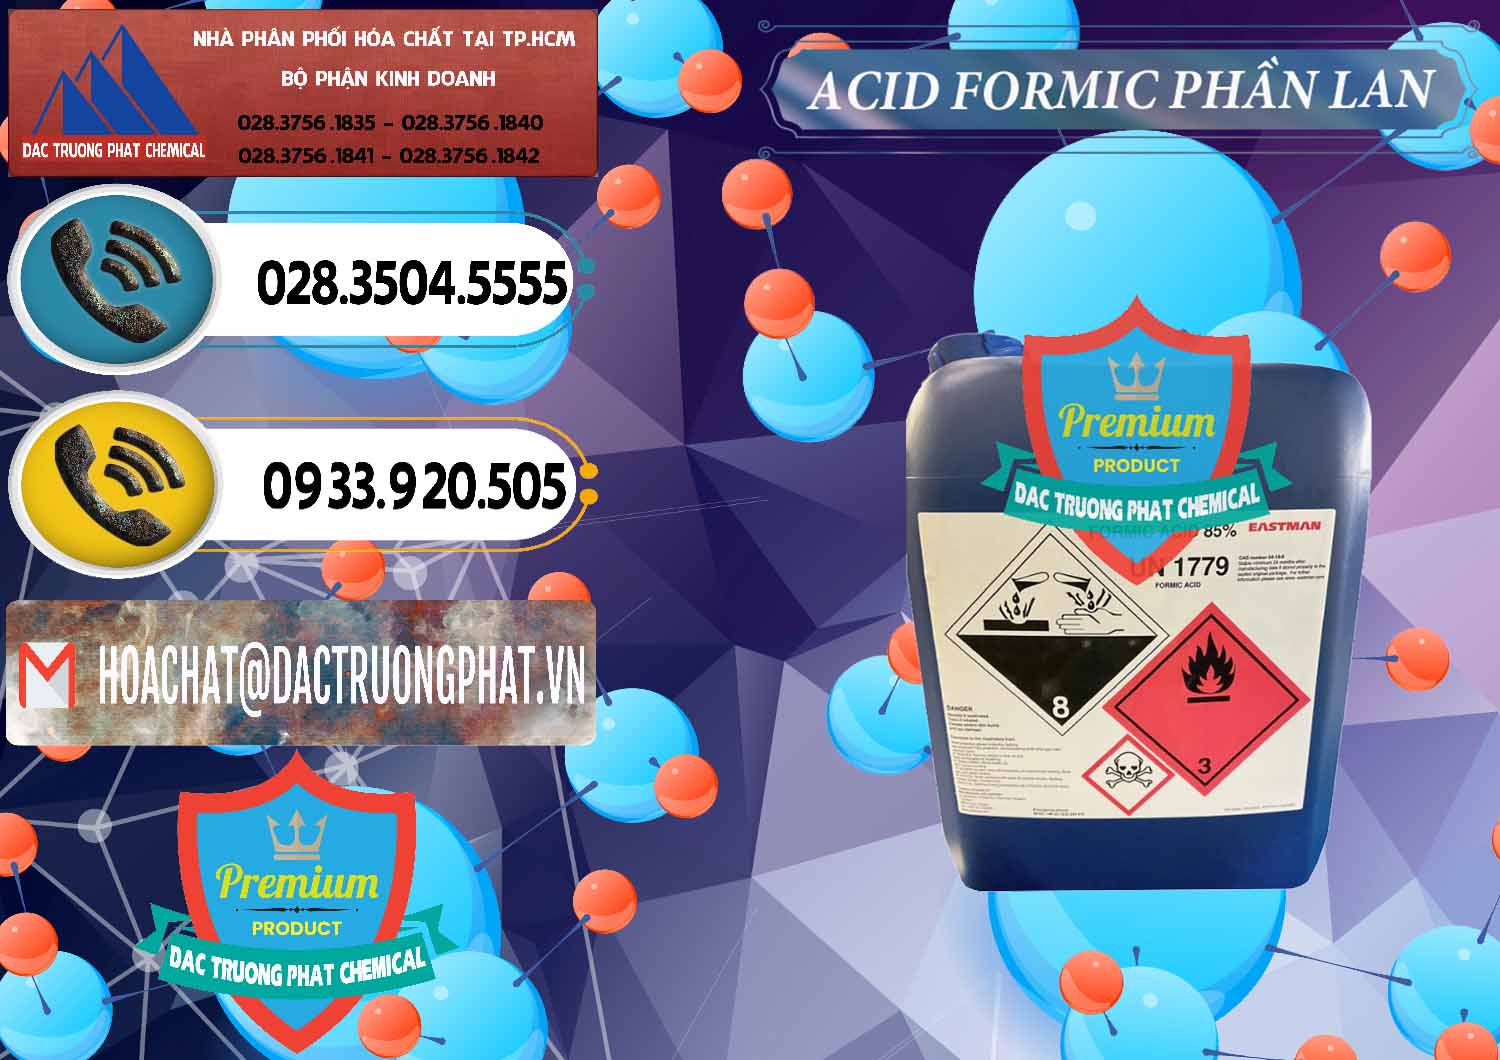 Nơi kinh doanh _ bán Acid Formic - Axit Formic Phần Lan Finland - 0376 - Kinh doanh ( cung cấp ) hóa chất tại TP.HCM - hoachatdetnhuom.vn